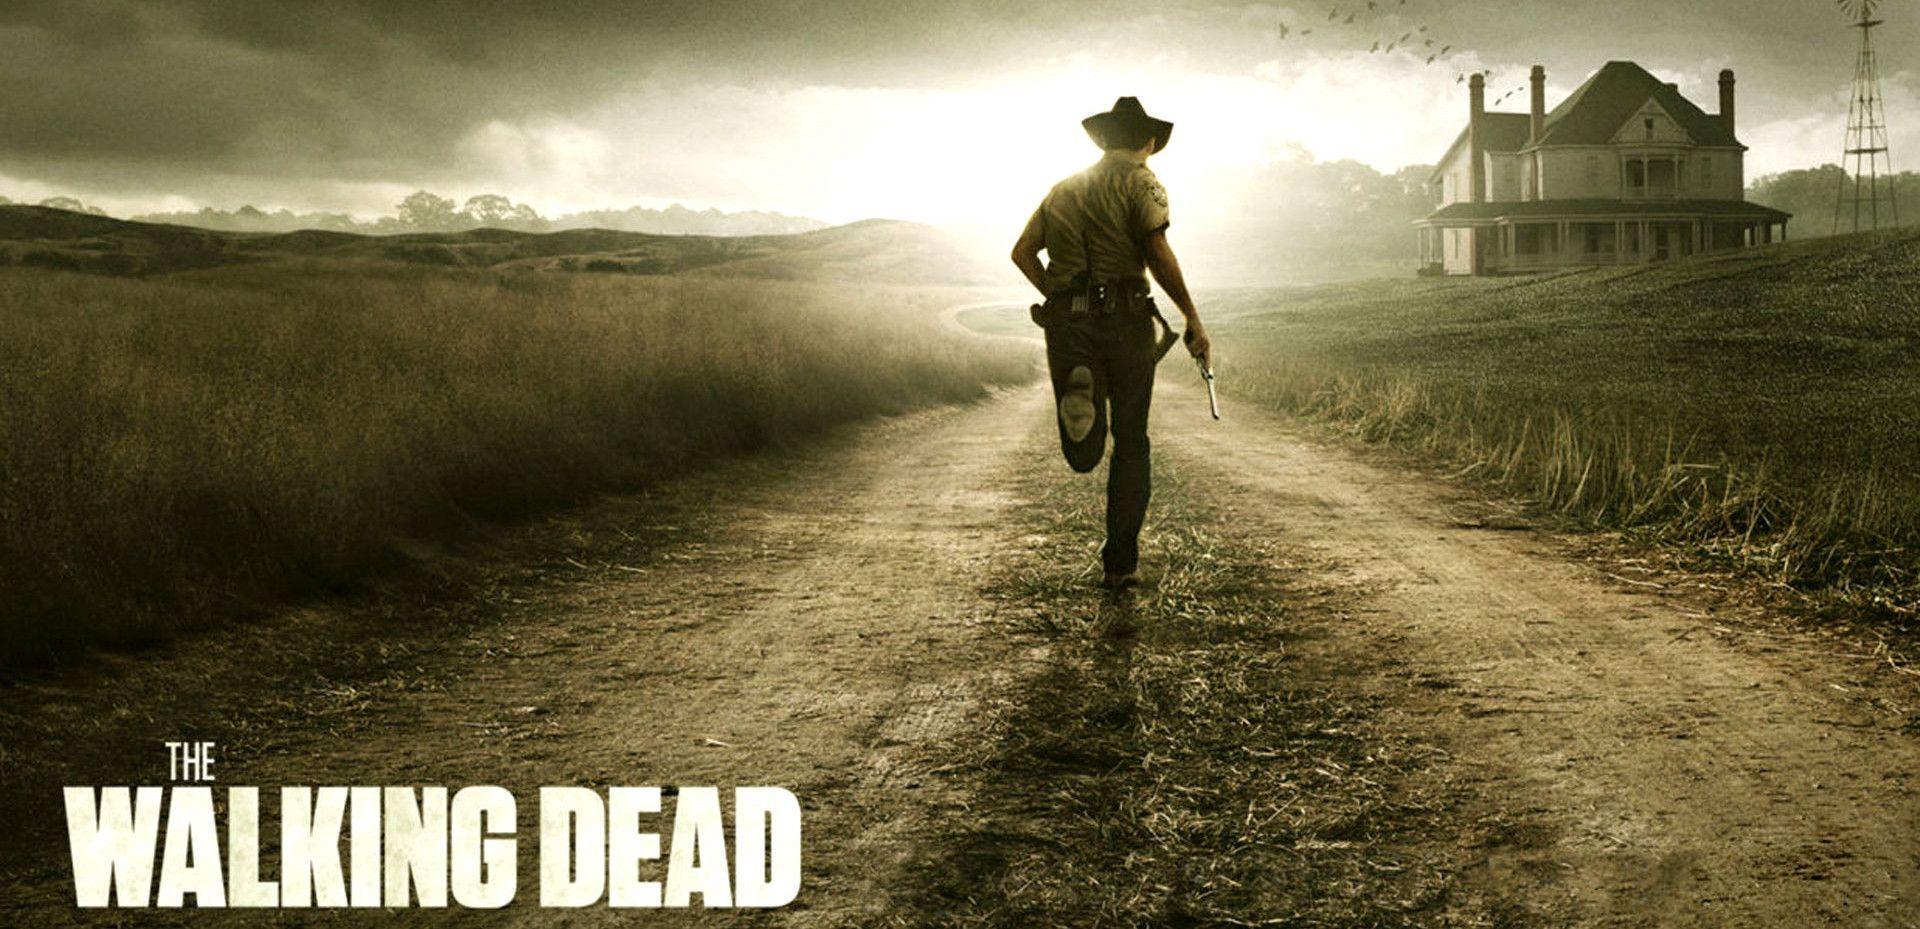 Walking Dead Season 3 wallpaper 177145